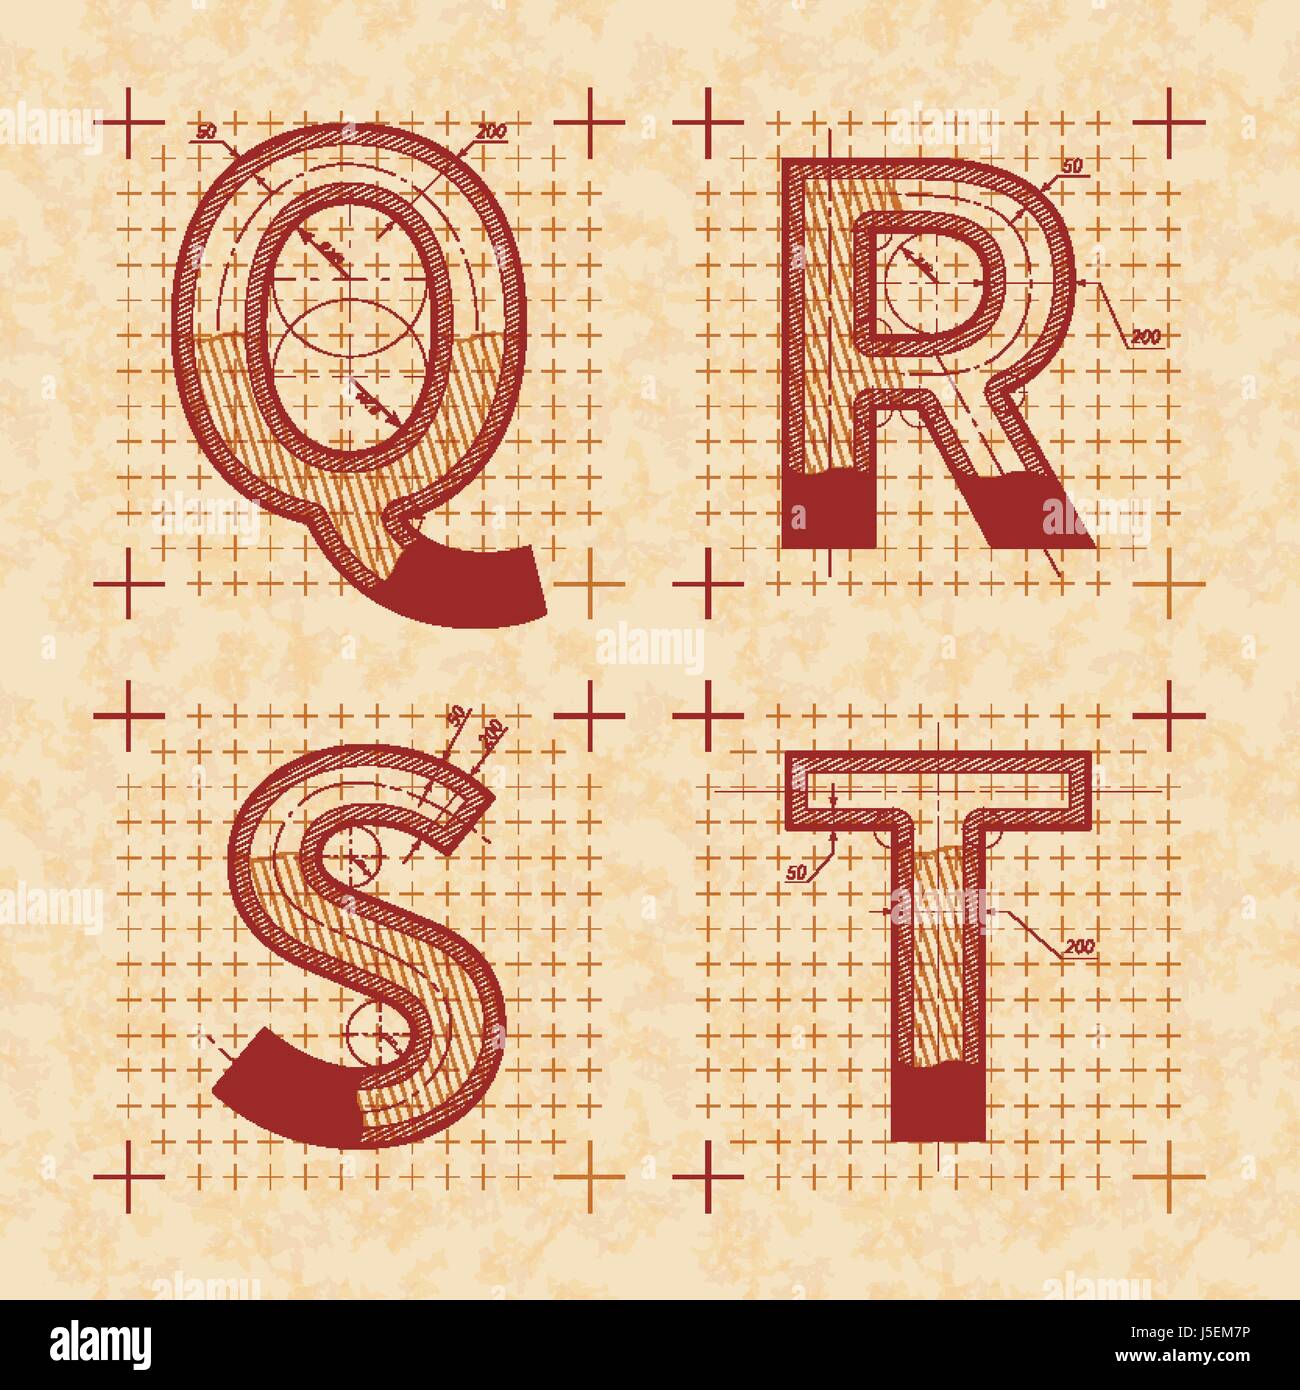 Croquis de l'inventeur médiéval Q R S T lettres. Retro style police sur vieux papier texturé Illustration de Vecteur